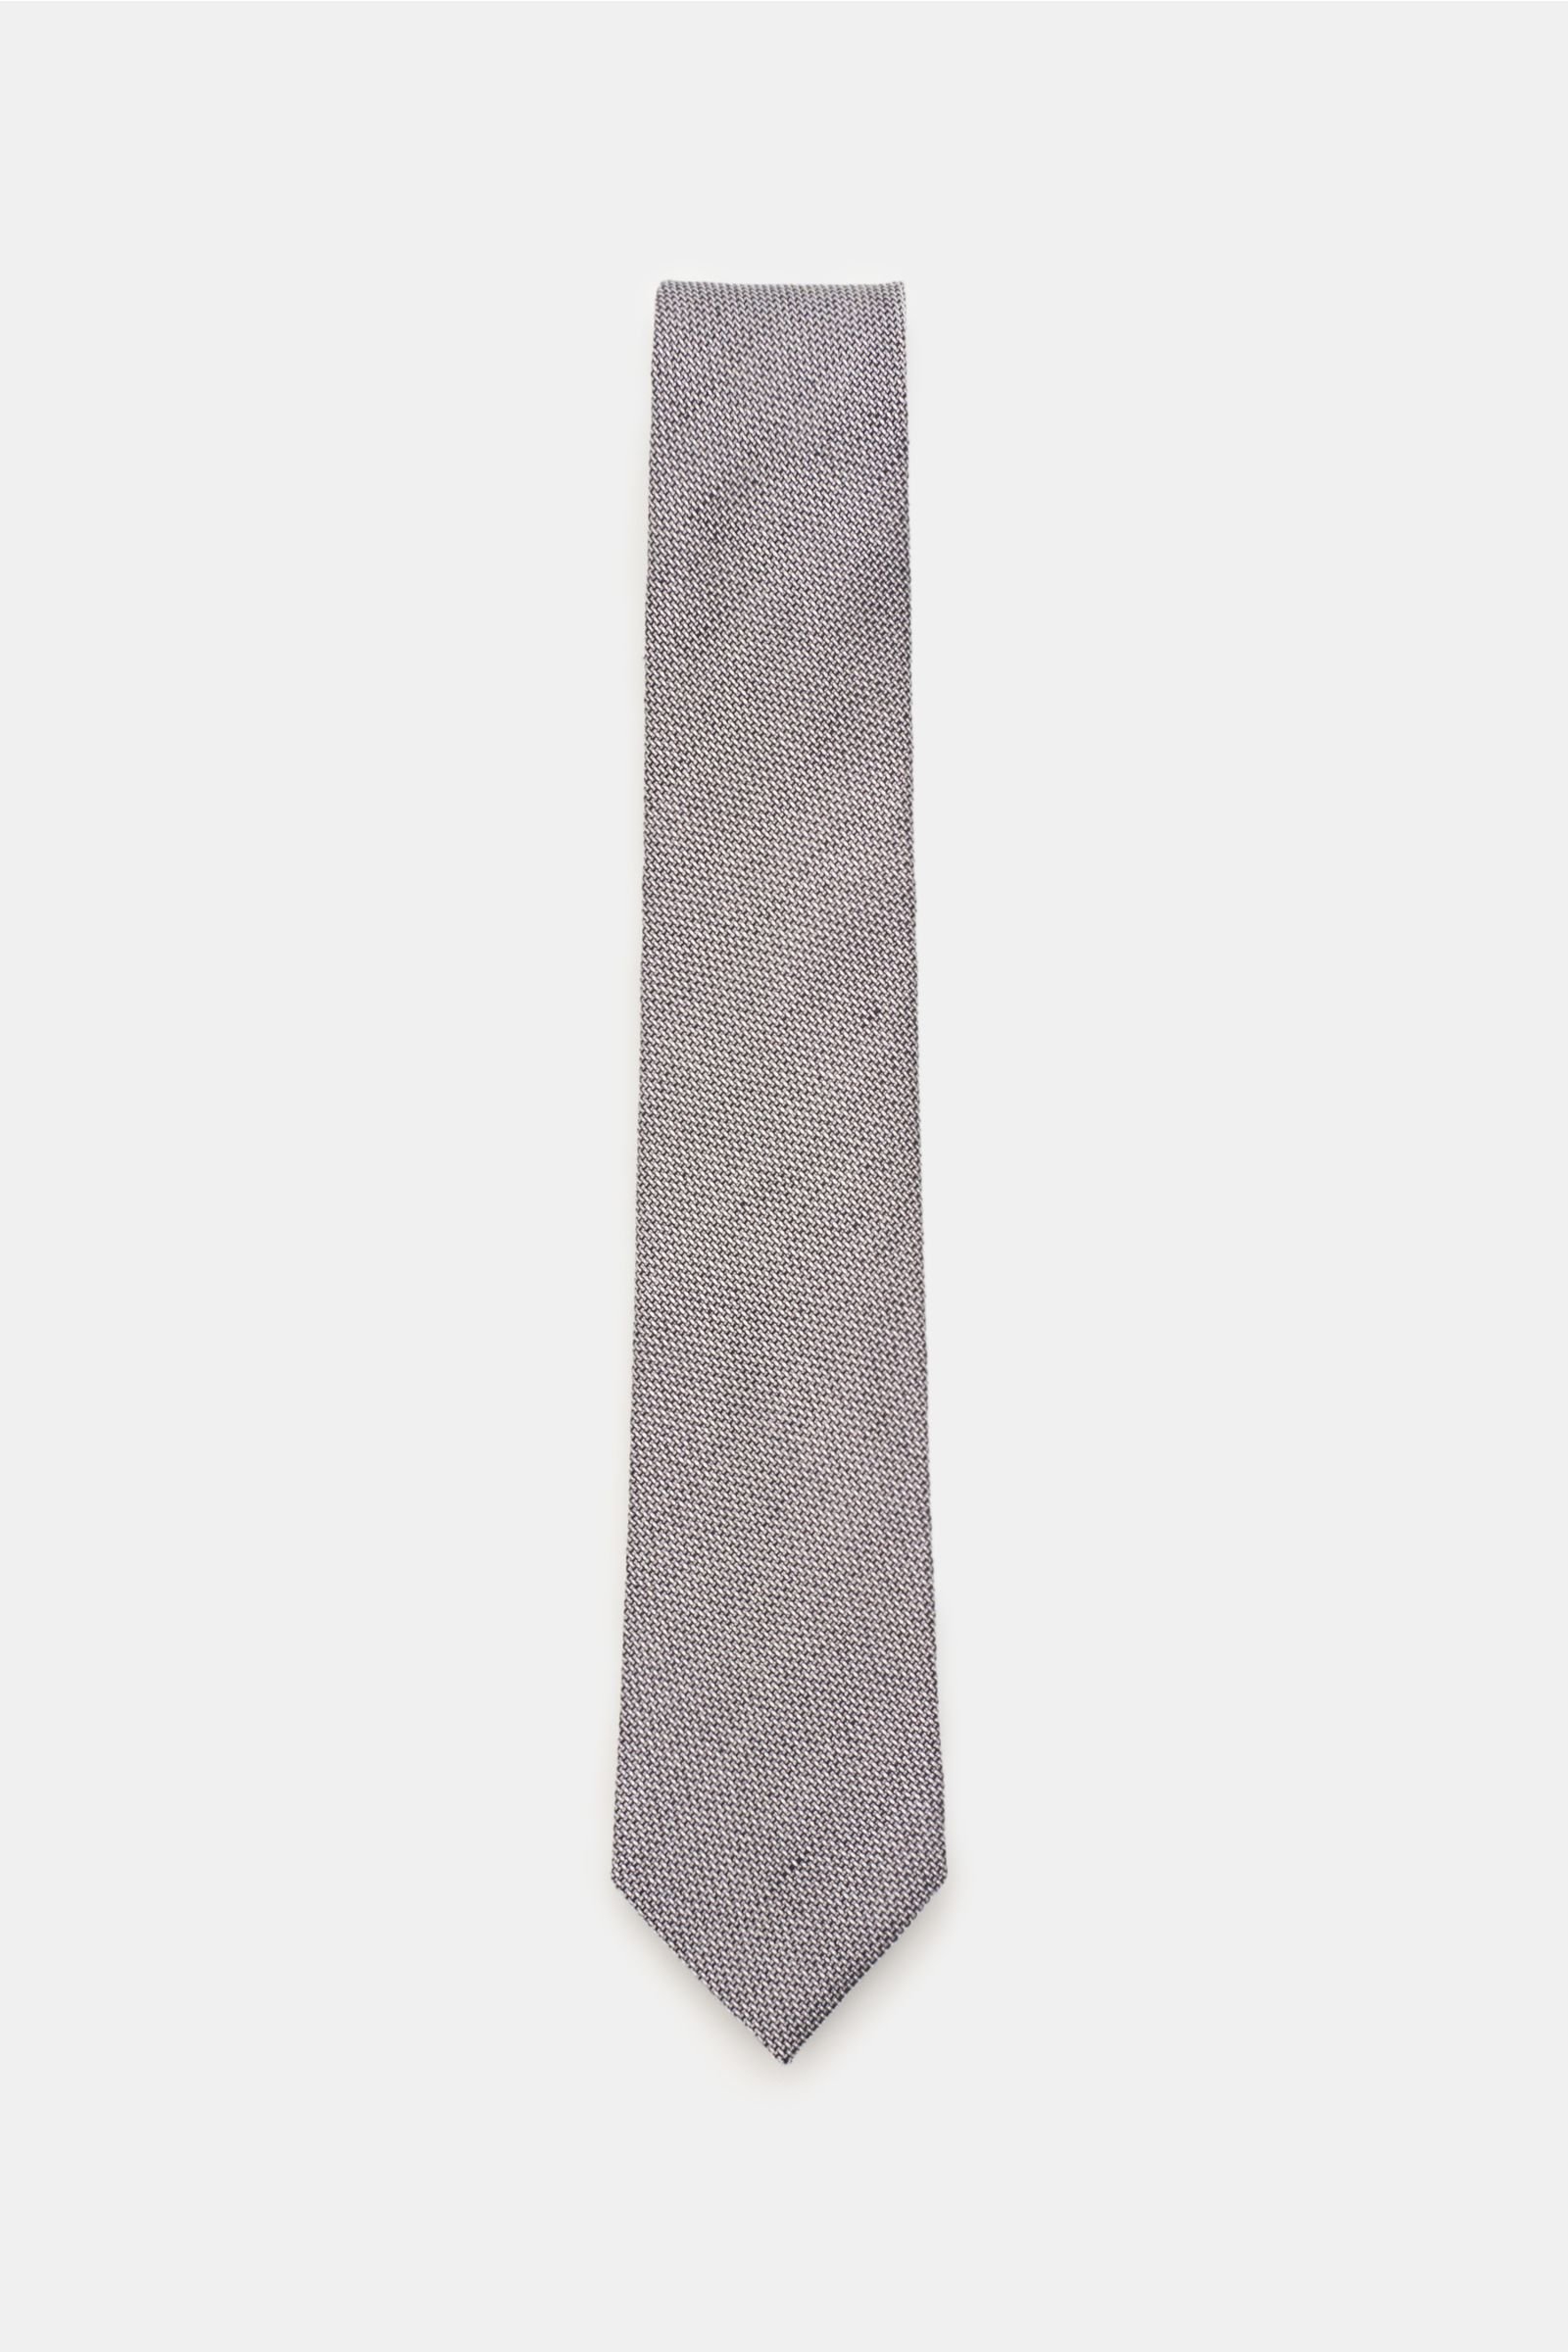 Tie grey